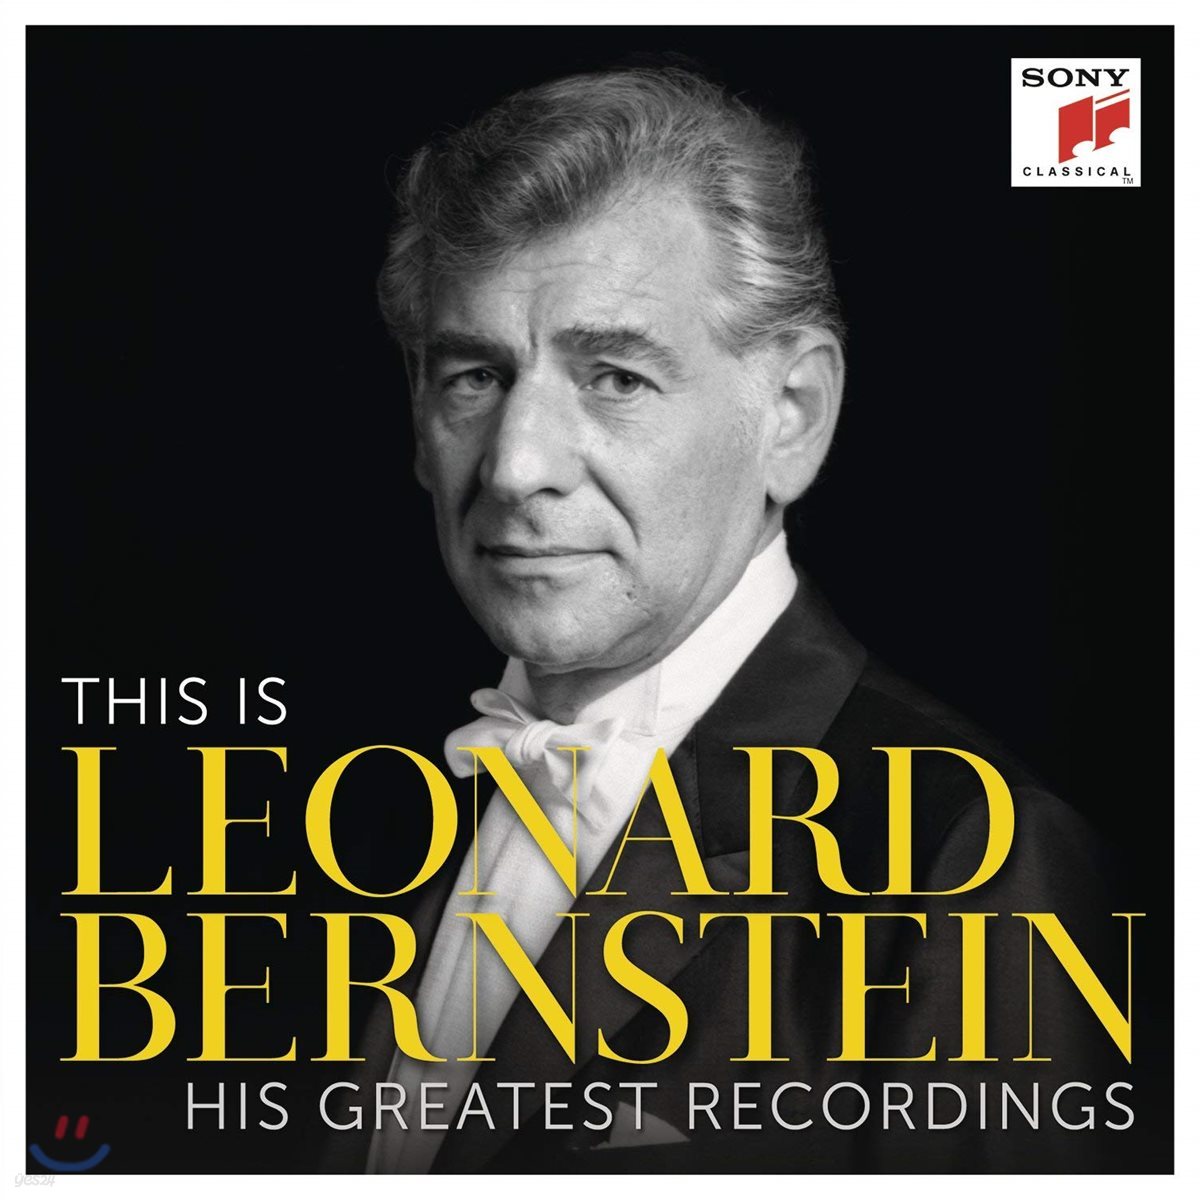 디스 이즈 레너드 번스타인 (This Is Leonard Bernstein - His Greatest Recordings)